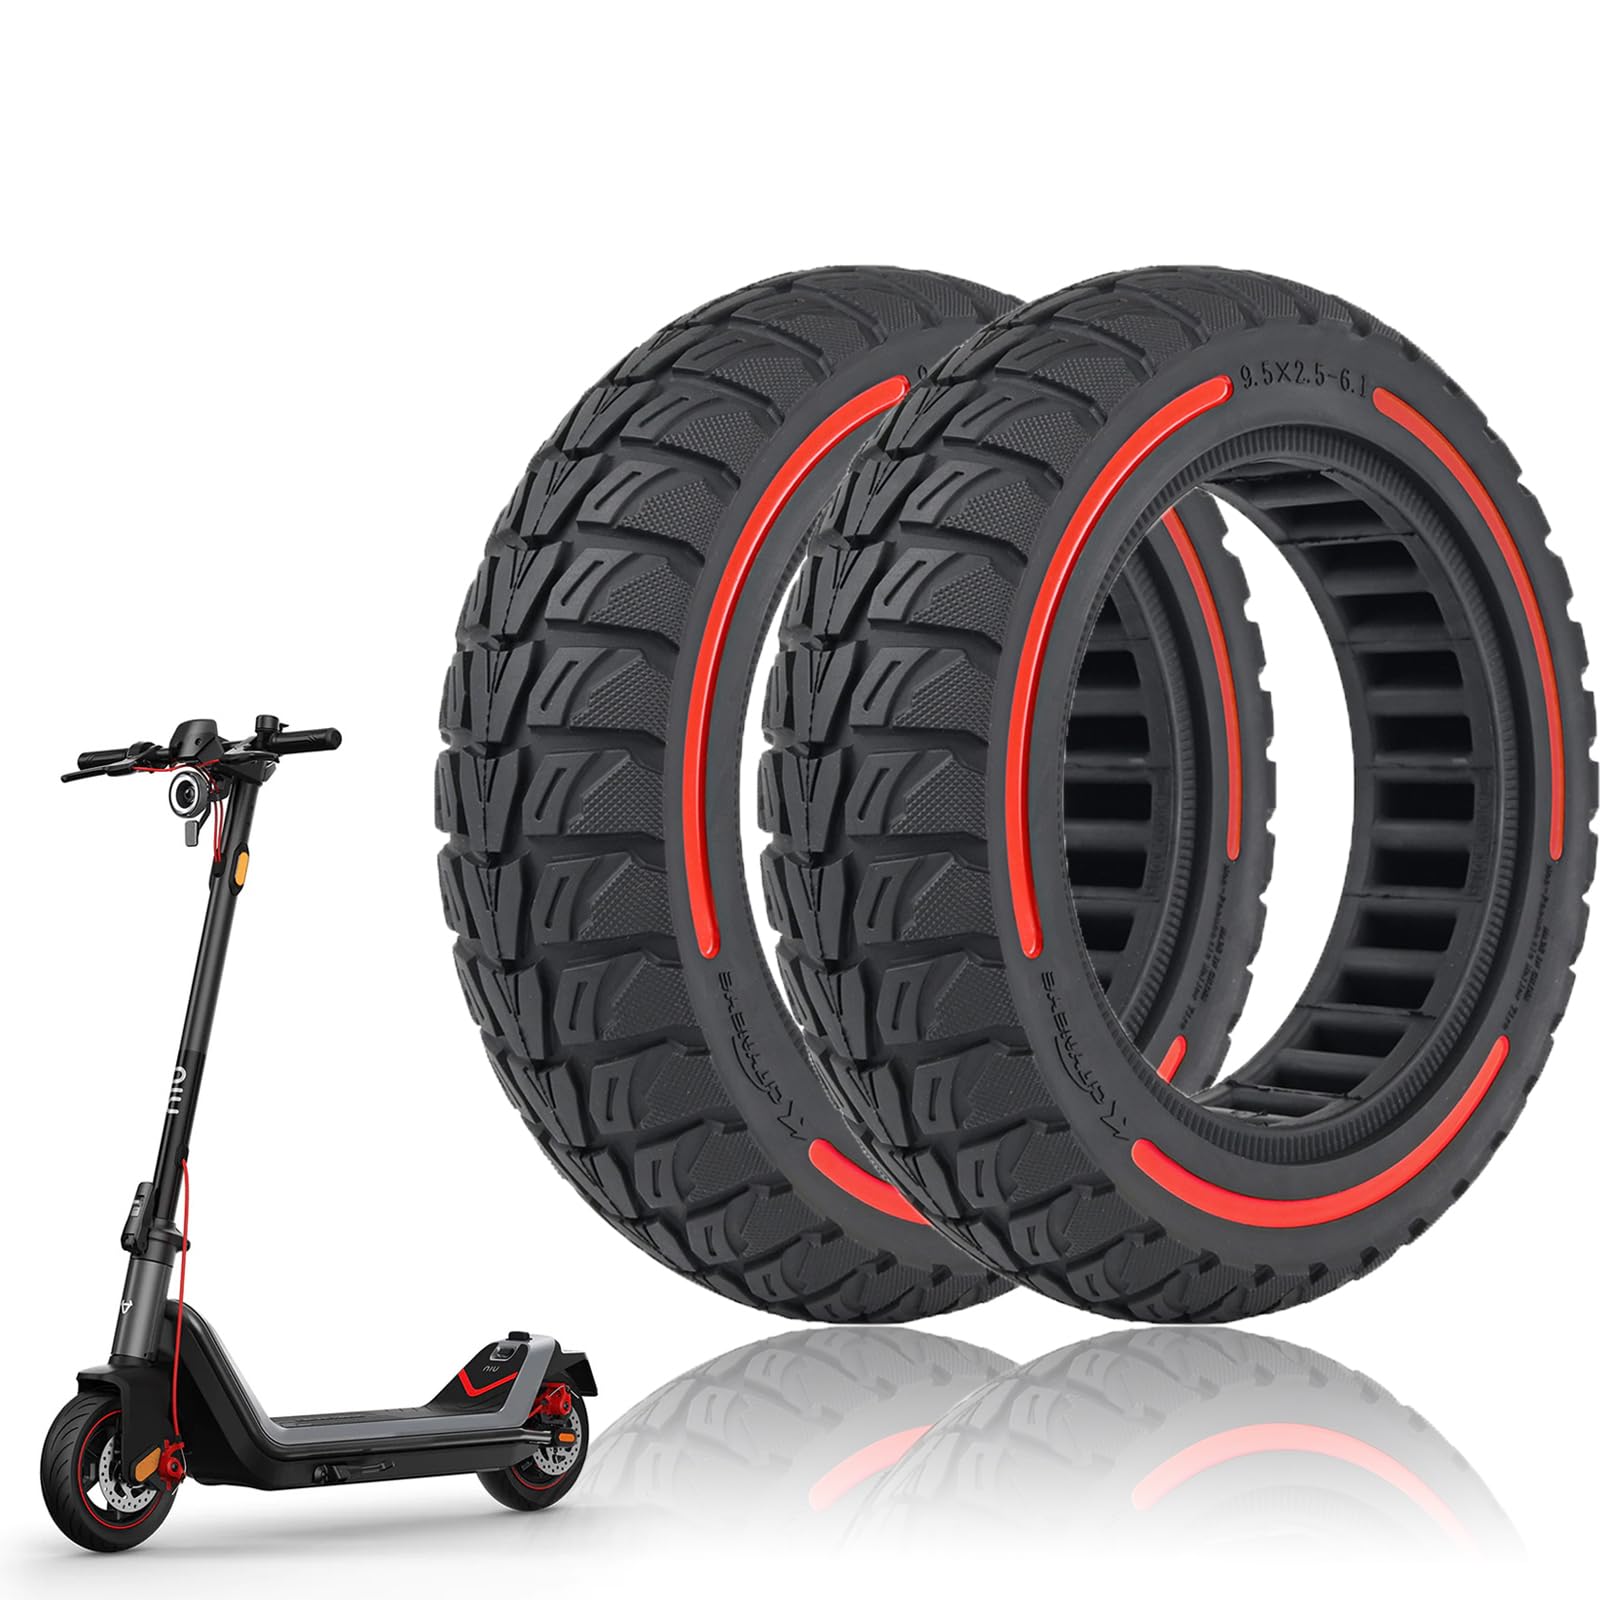 MotuTech 9,5 x 2,5 – 6,1 Reifen ohne Reifen für NIU KQi3 KQi3 Sport KQi3 Pro KQi3 Max Scooter Scooter Reifen pannensicher rutschfest elektrisch (2, rot) von MotuTech